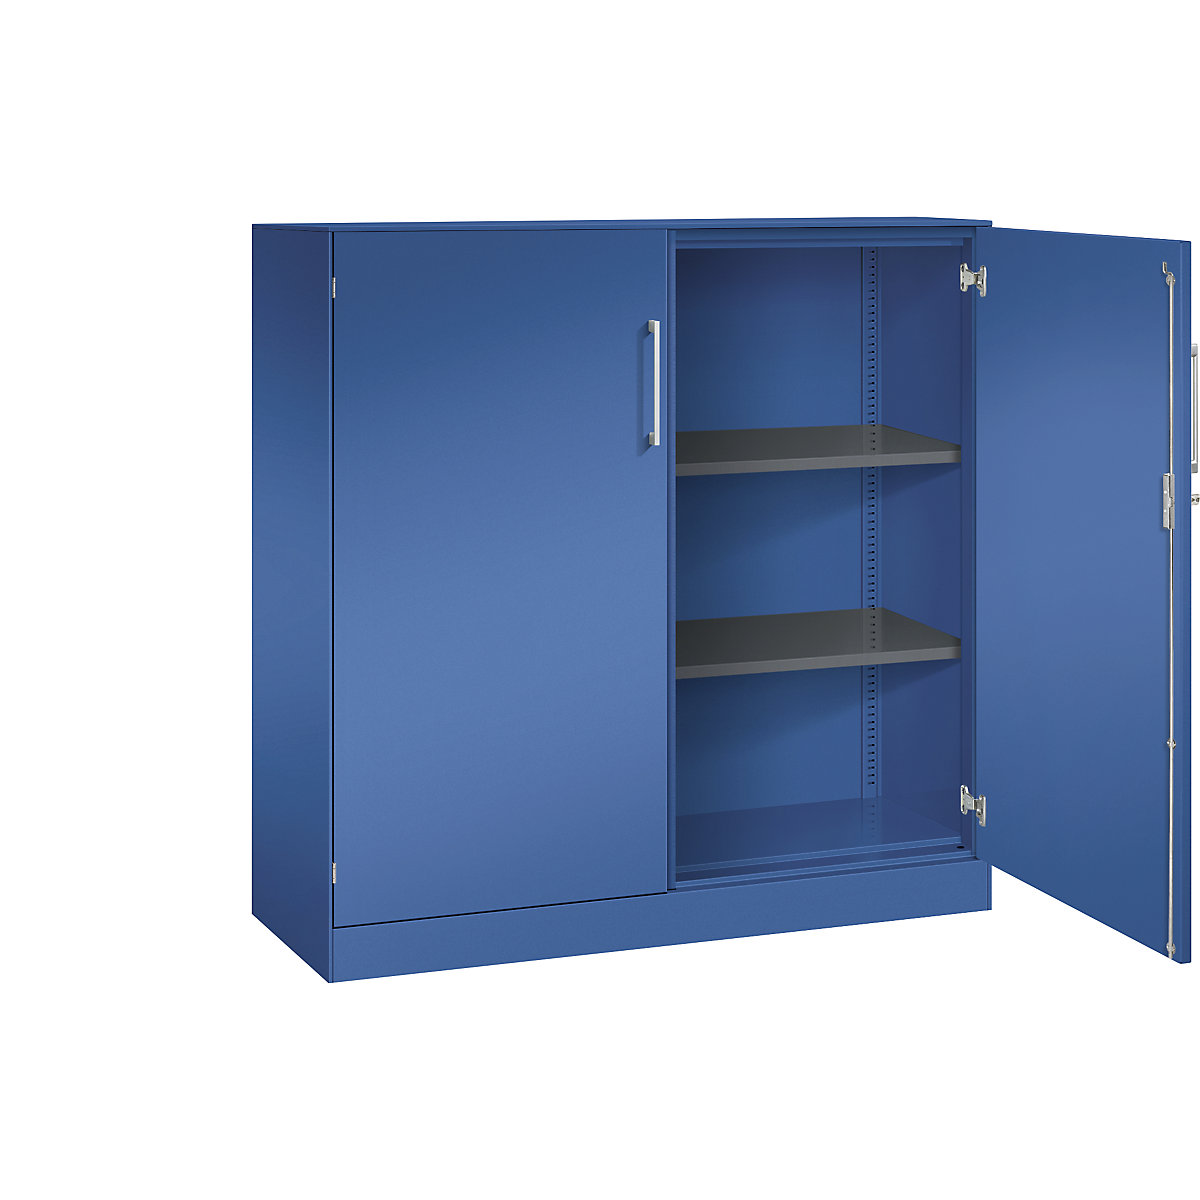 C+P – Skříň s otočnými dveřmi ASISTO, výška 1292 mm, šířka 1200 mm, 2 police, enciánová modrá/enciánová modrá